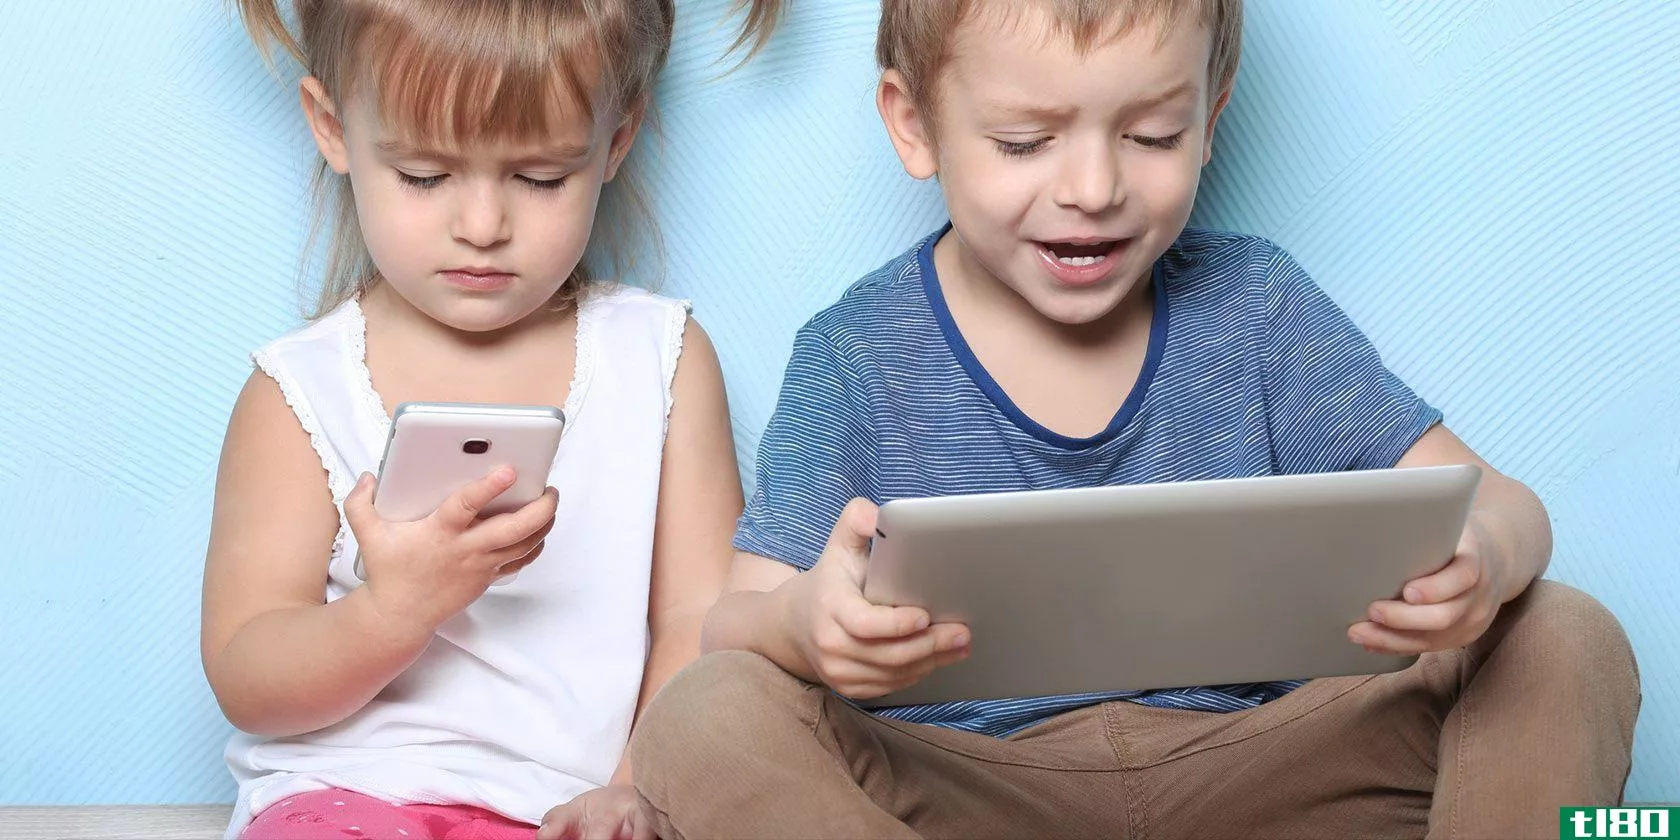 dangerous-mobile-apps-children